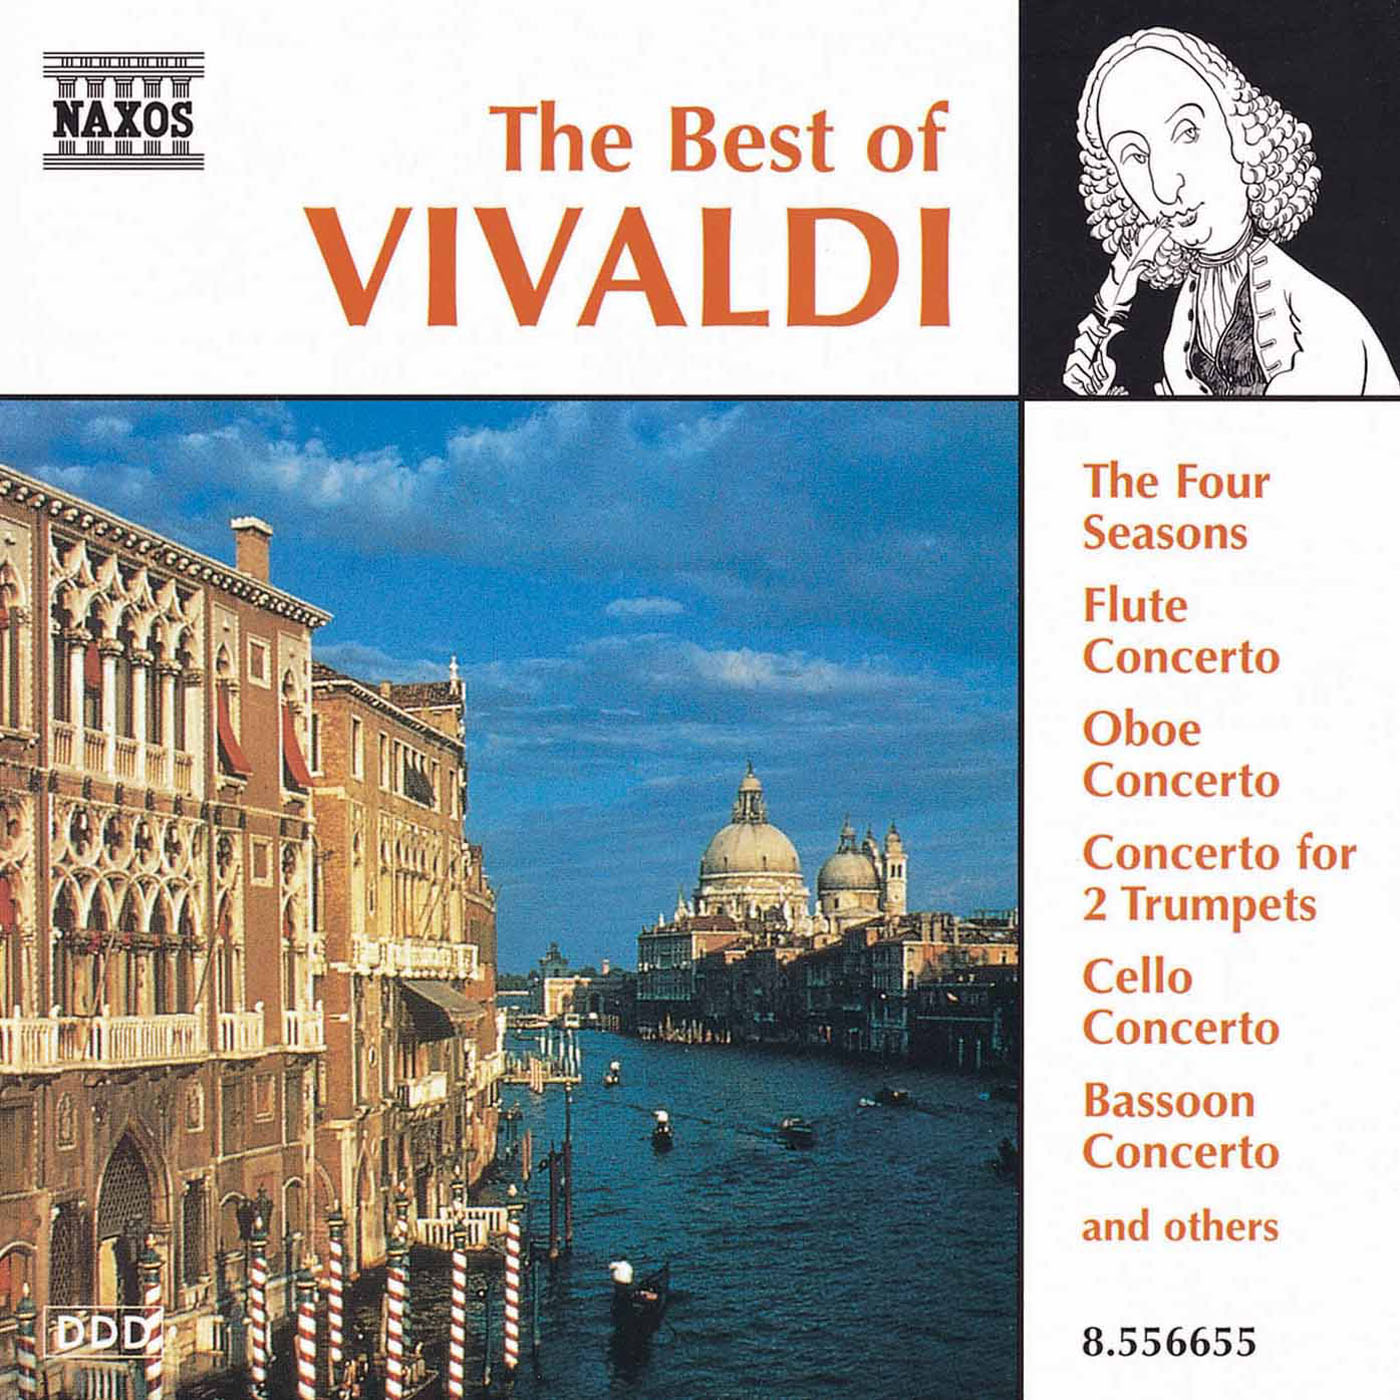 download the new version Vivaldi браузер 6.1.3035.302